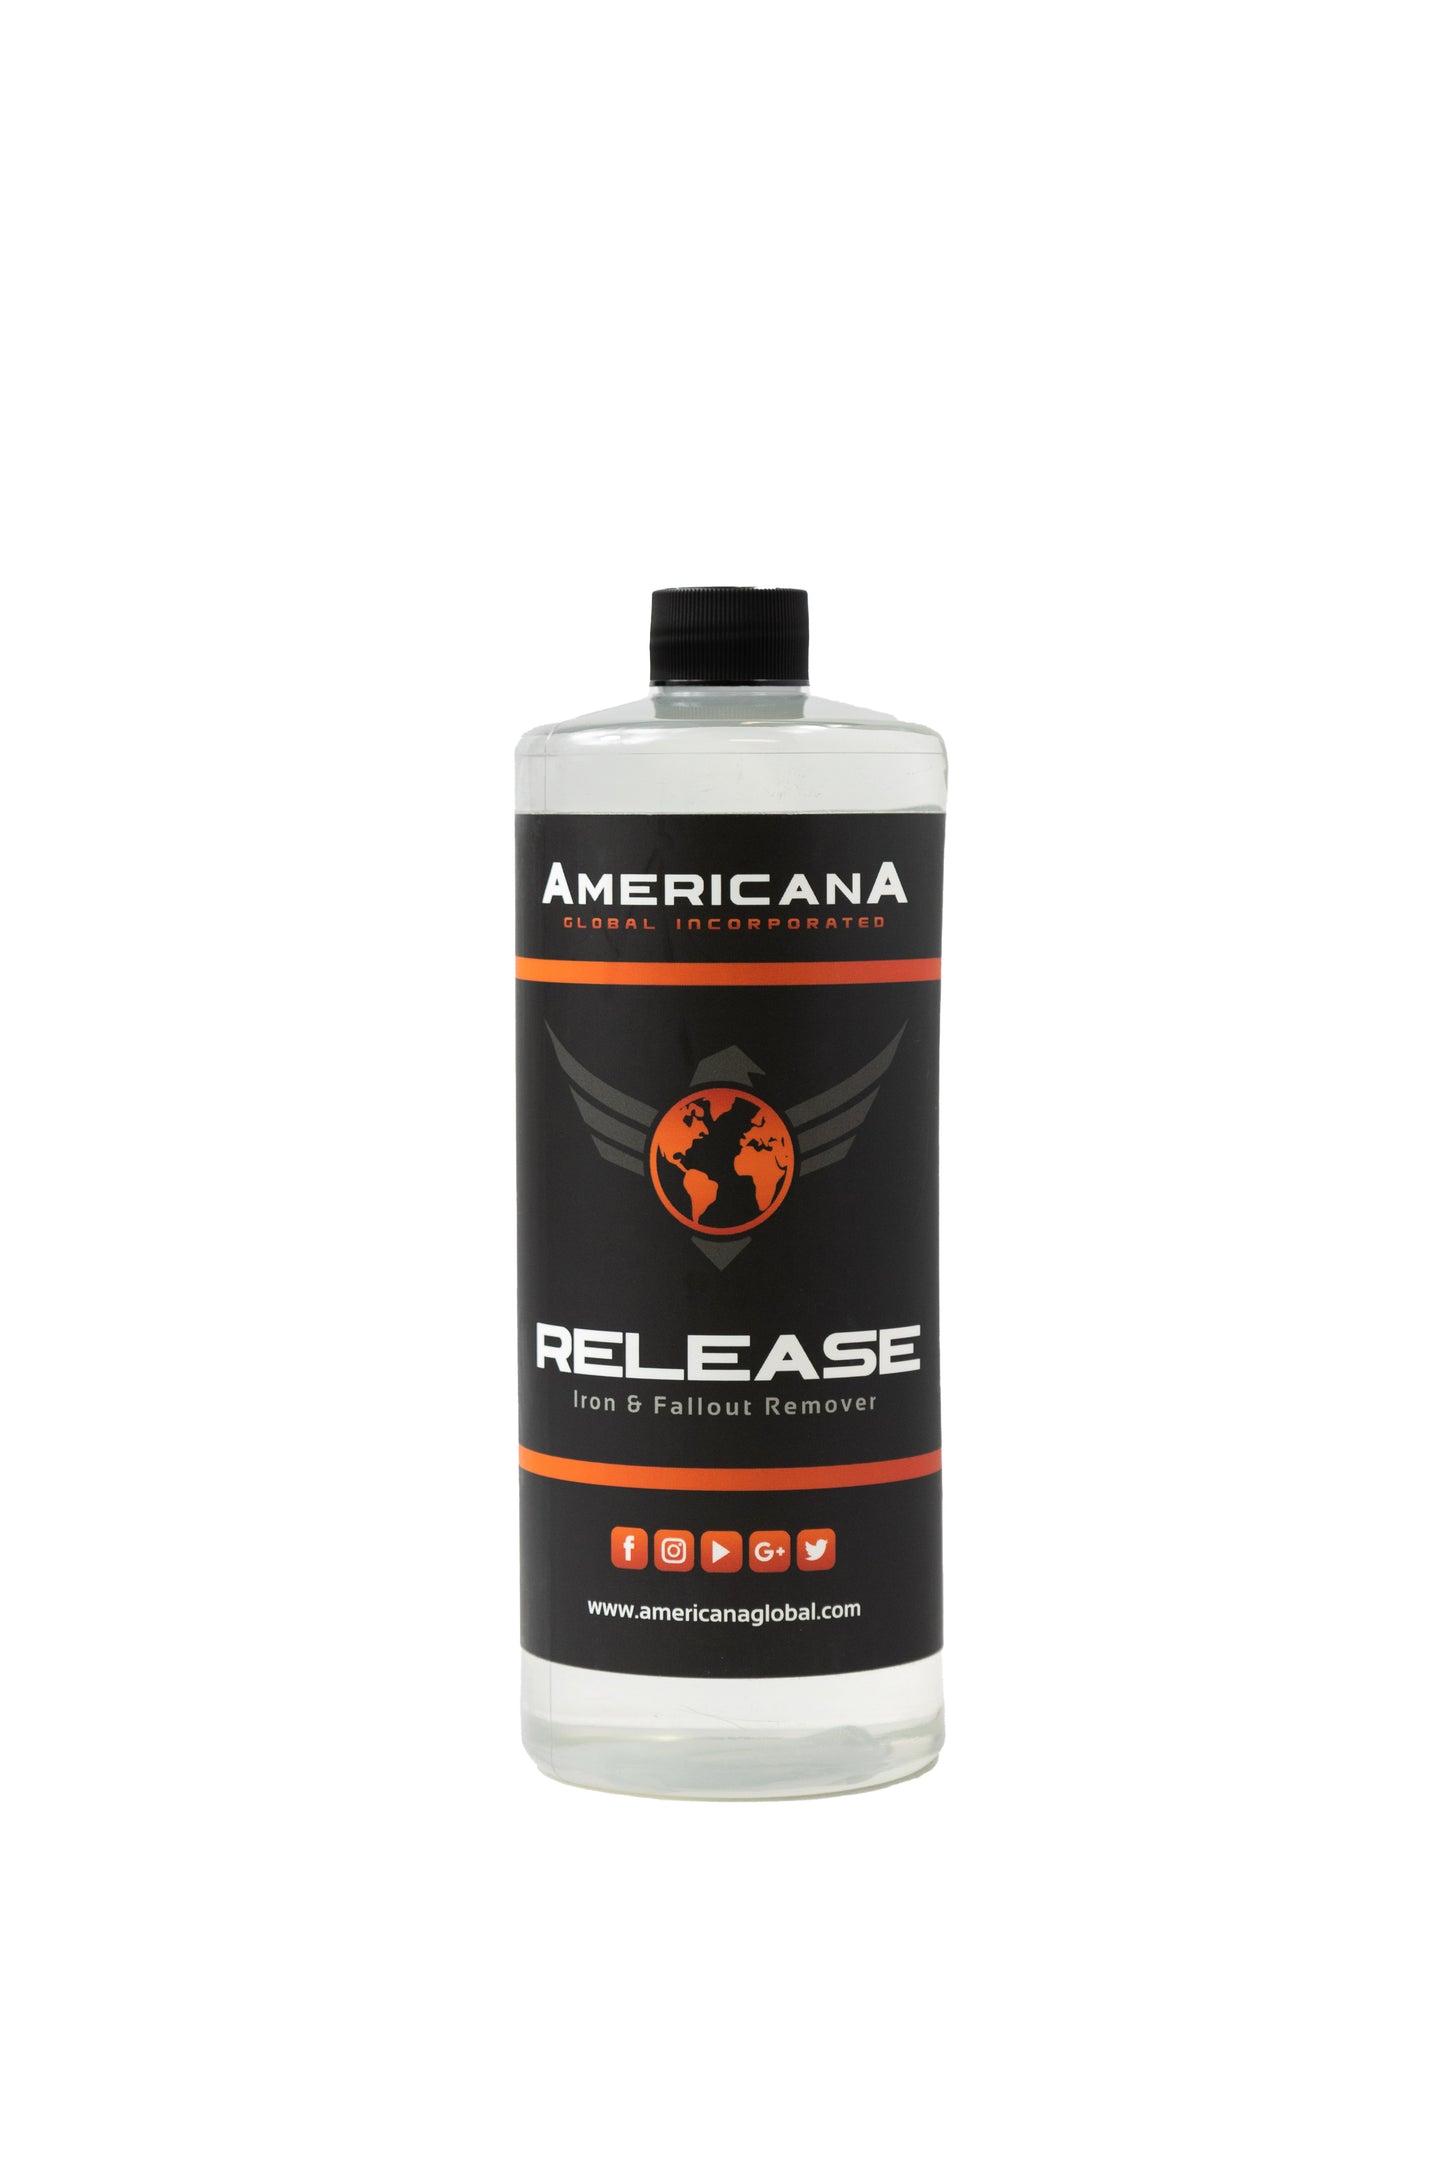 Americana Global Release